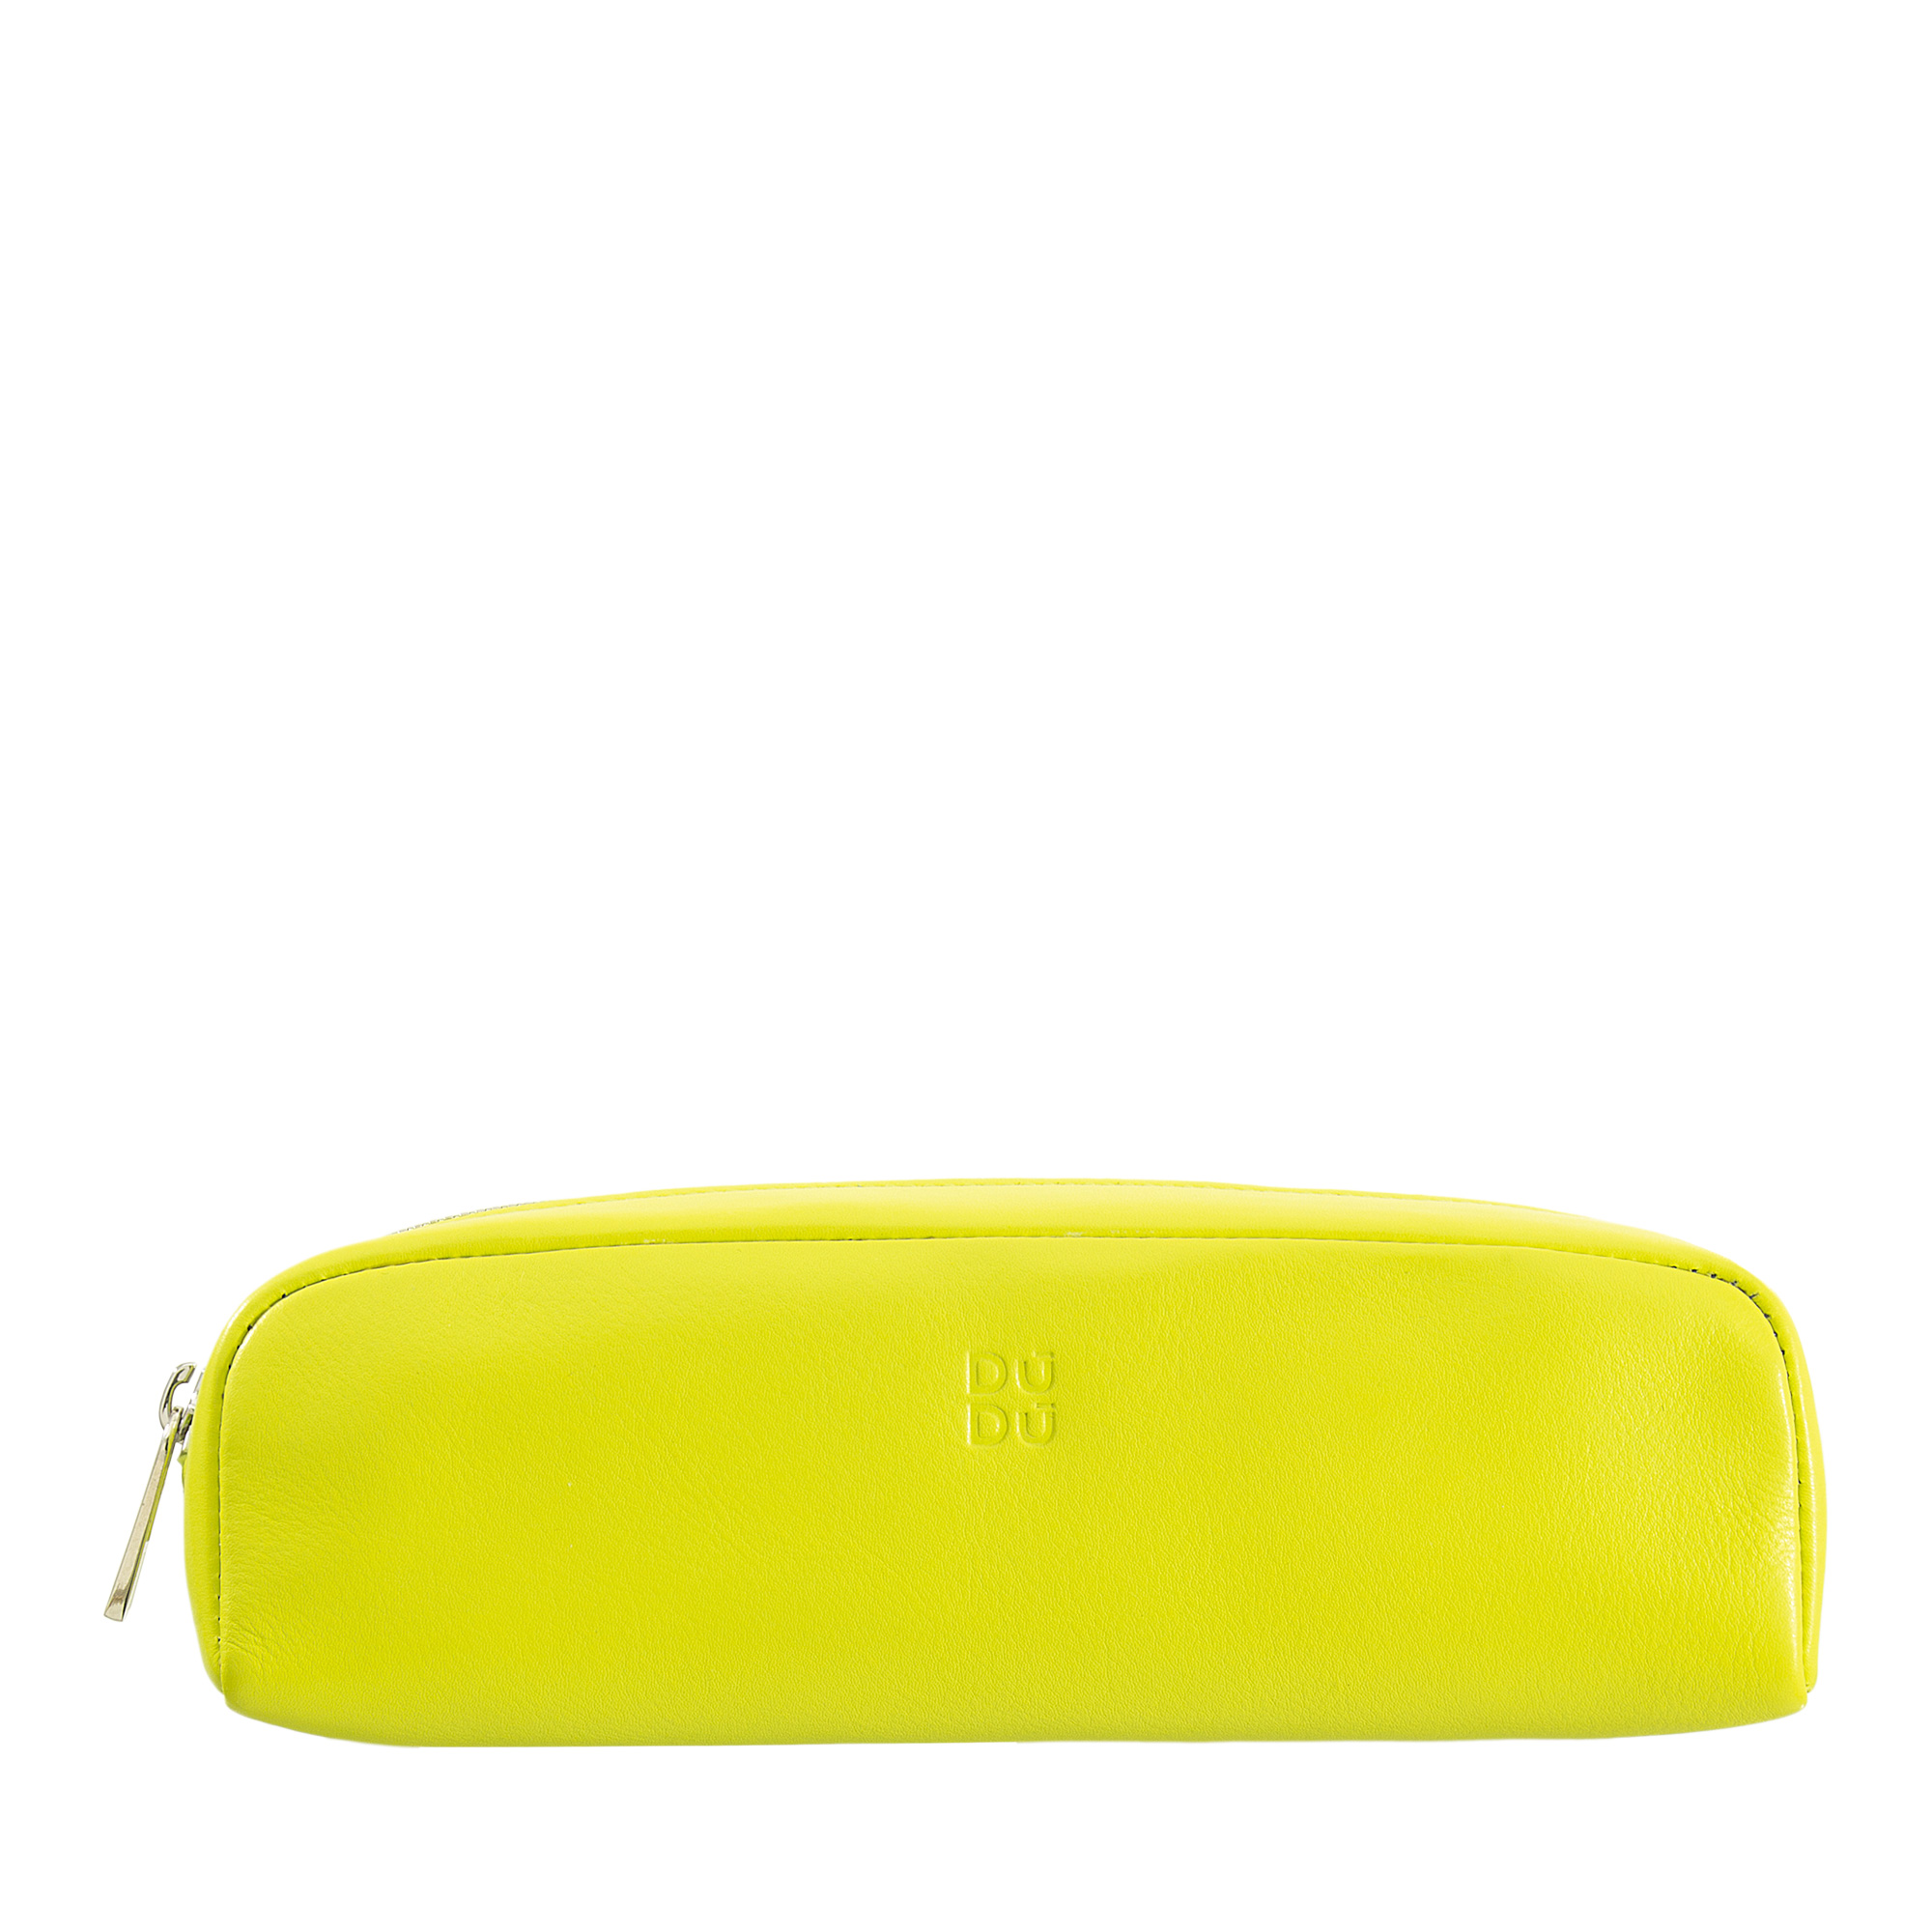 Colorful - Pencil case - Lime